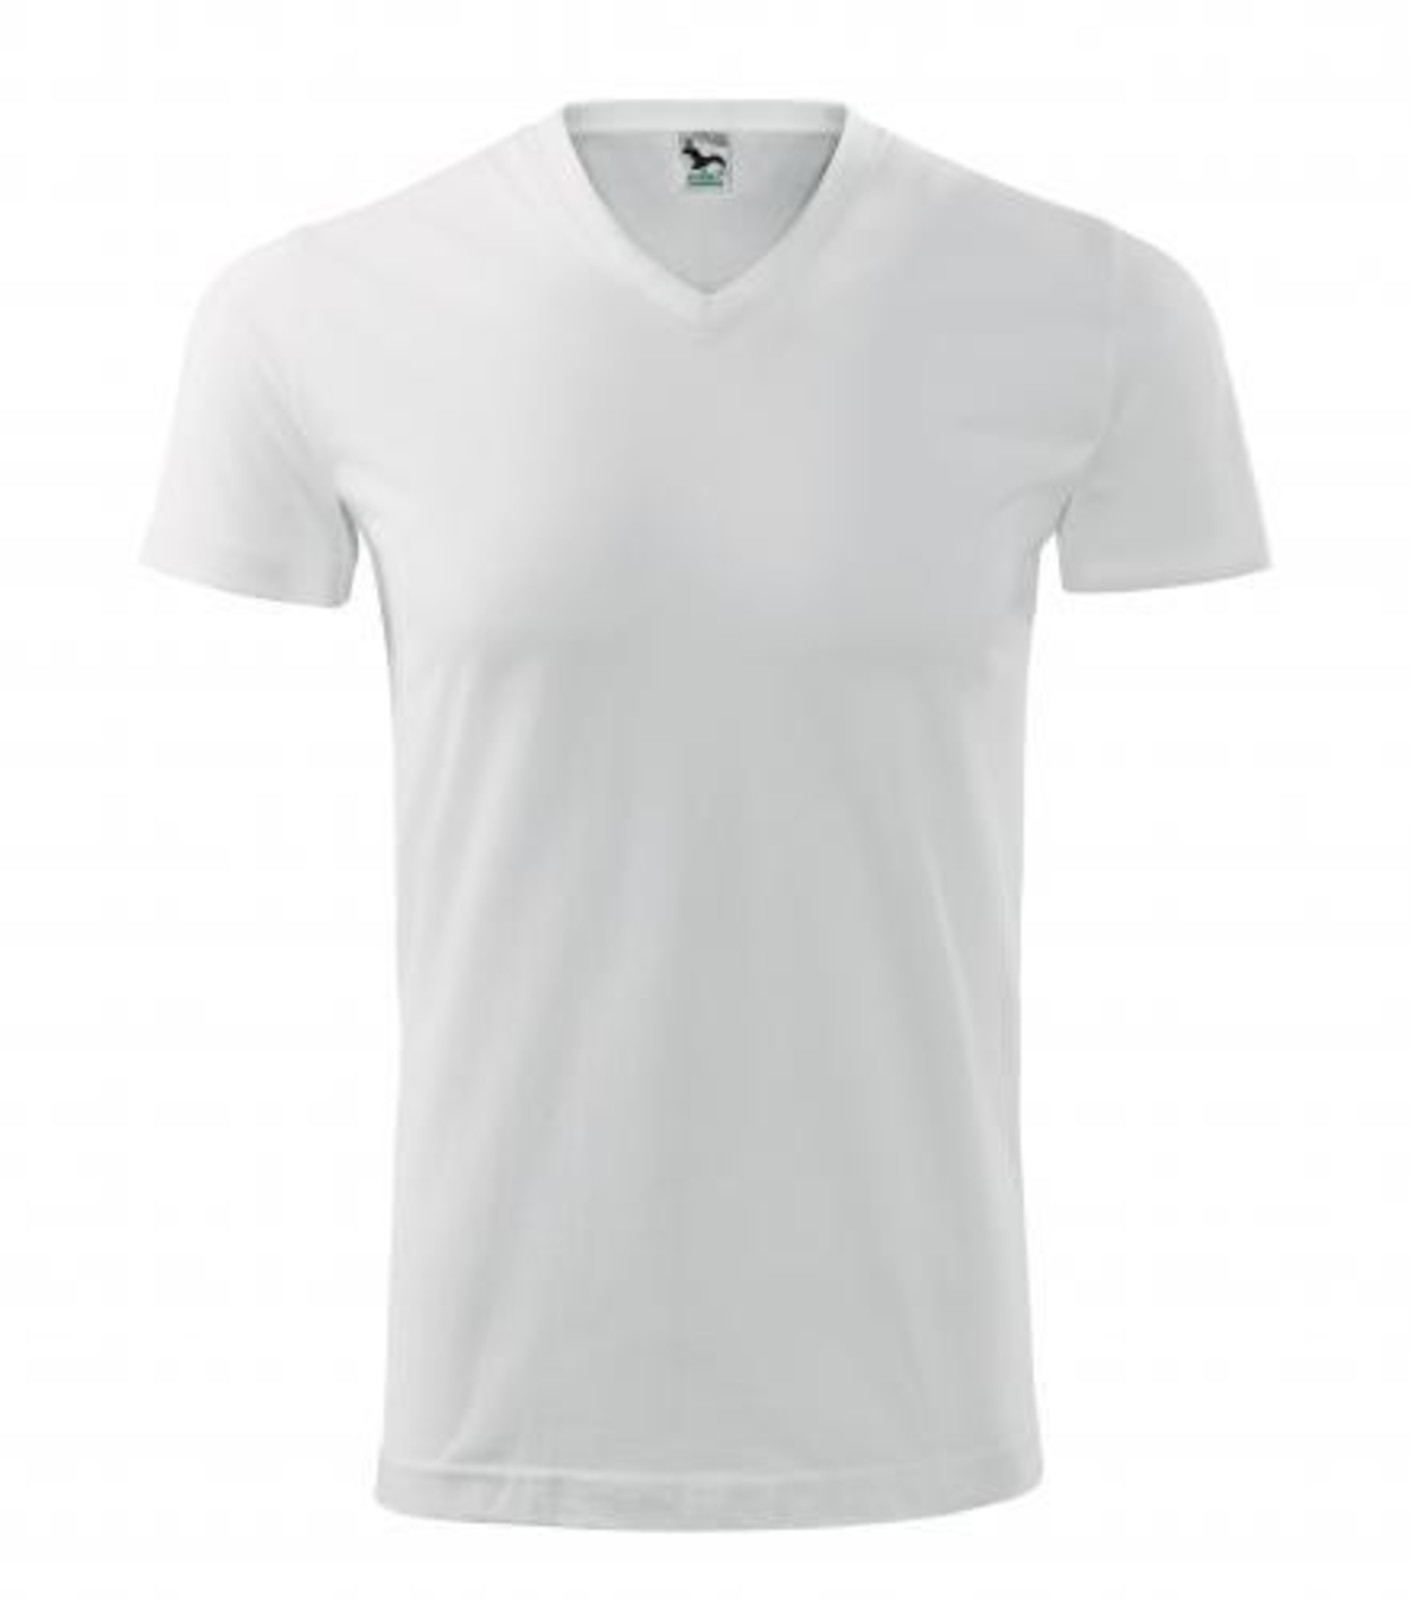 Unisex tričko s V výstrihom Adler Heavy V-Neck 111 - veľkosť: XL, farba: biela